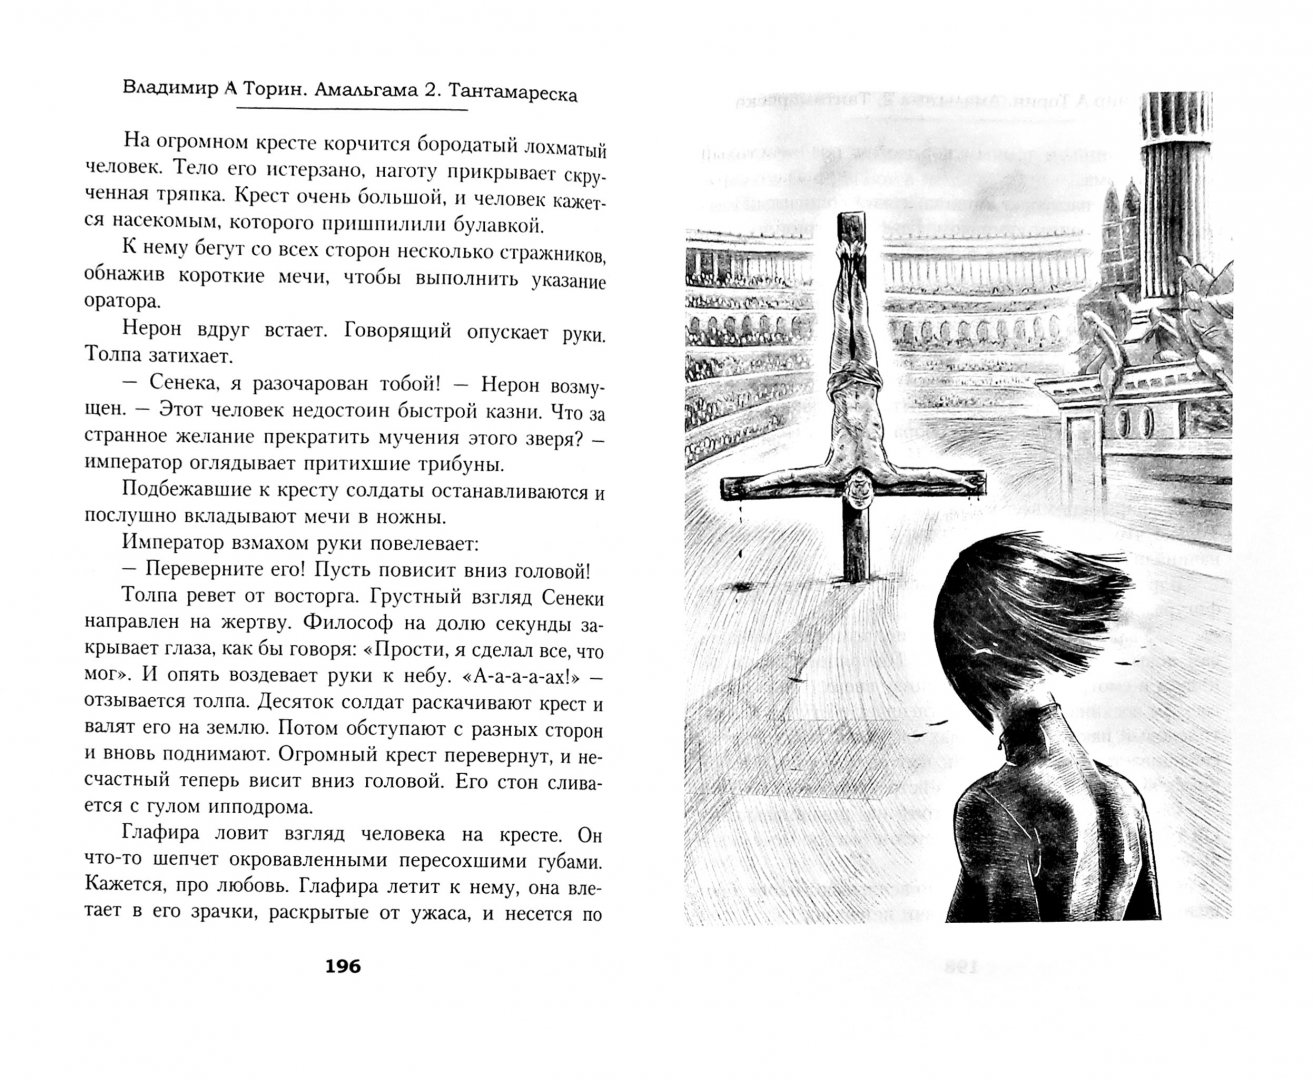 Иллюстрация 1 из 17 для Амальгама 2. Тантамареска - Владимир Торин | Лабиринт - книги. Источник: Лабиринт